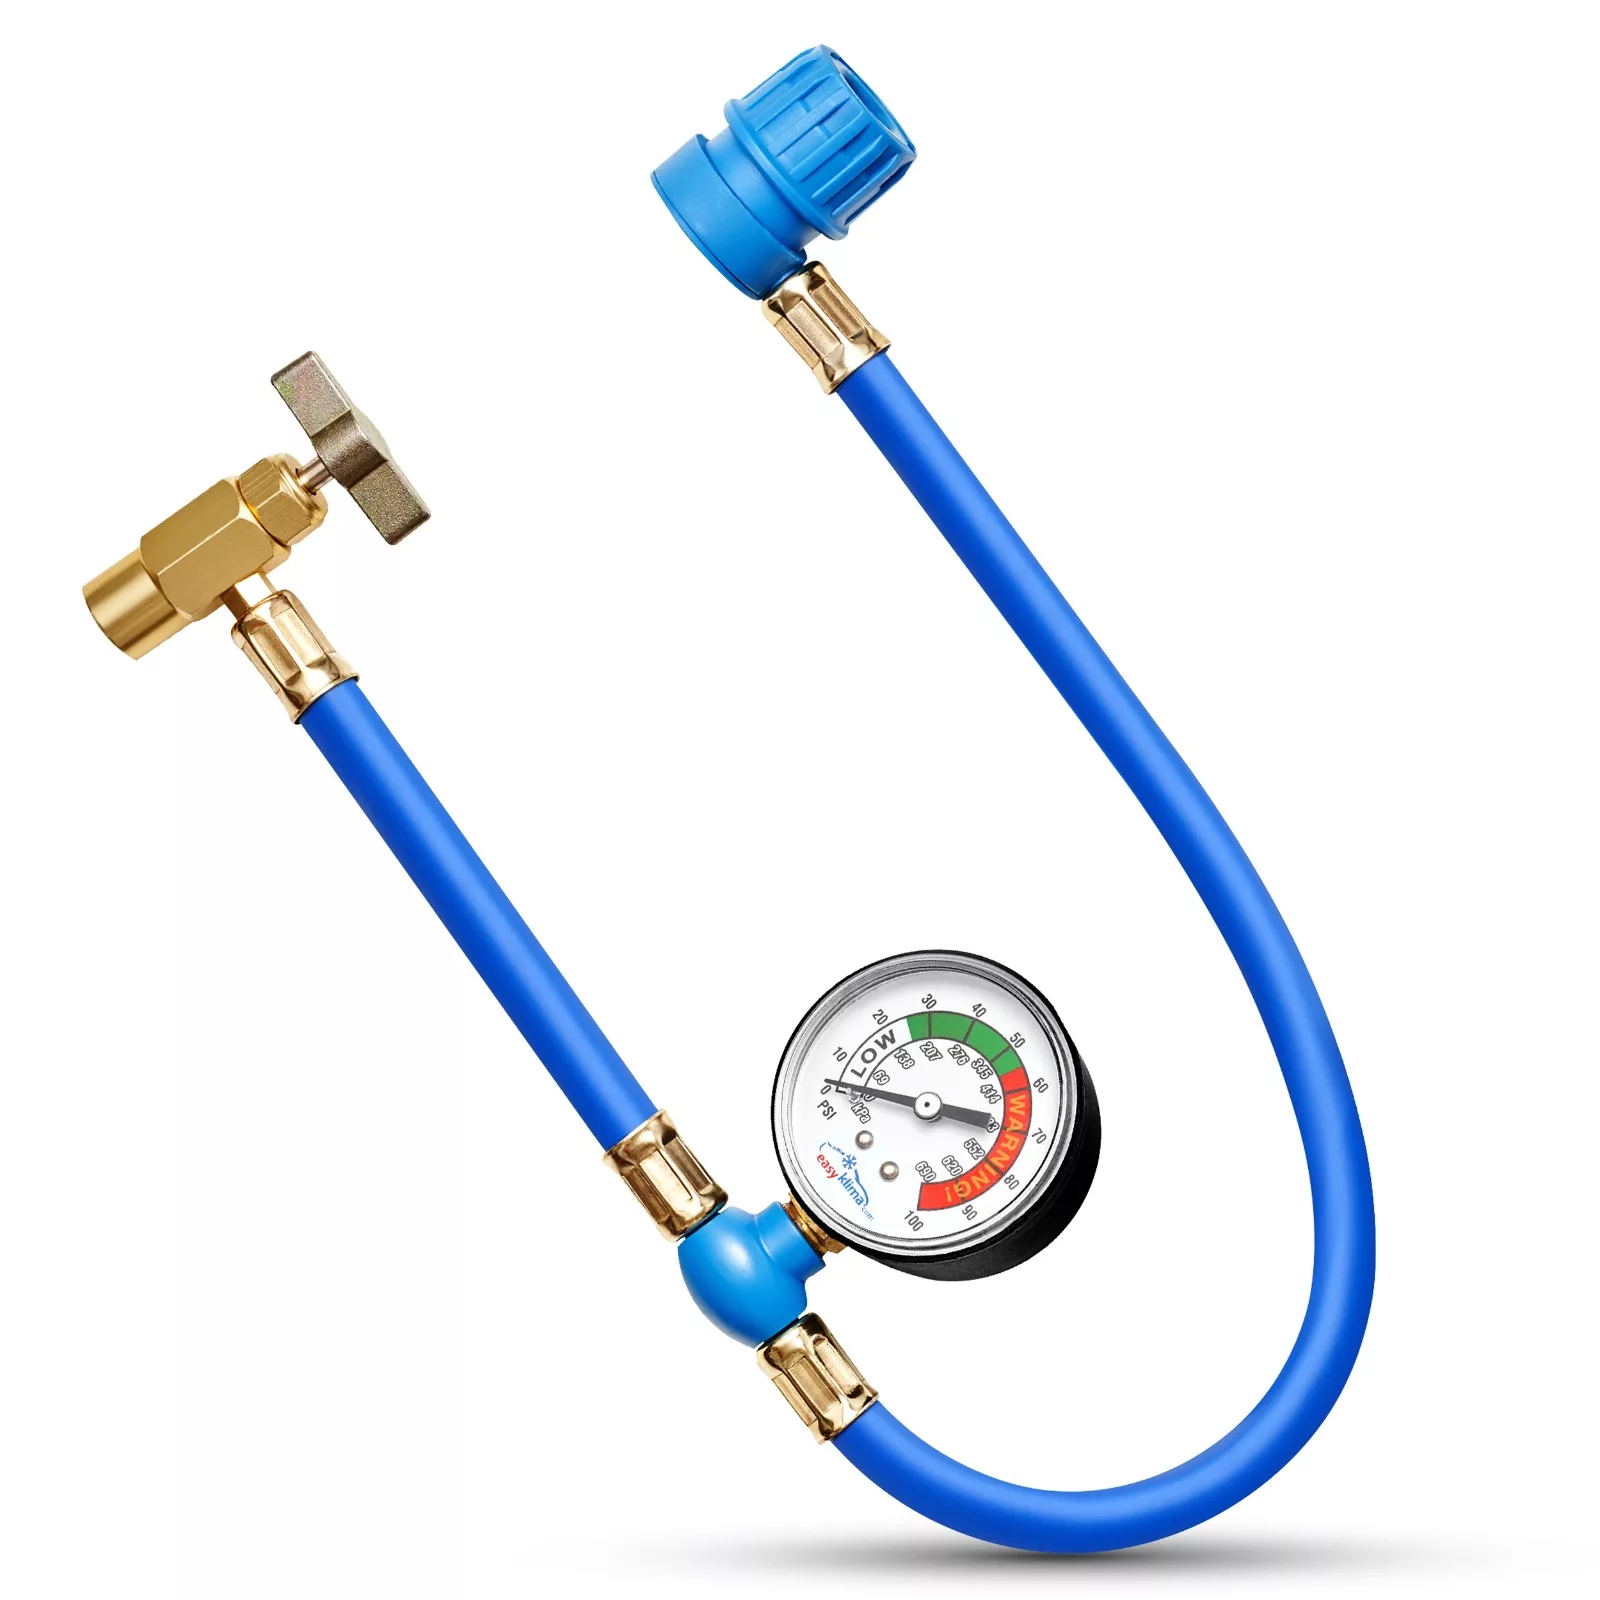 EasyKlima Pressure gauge hose